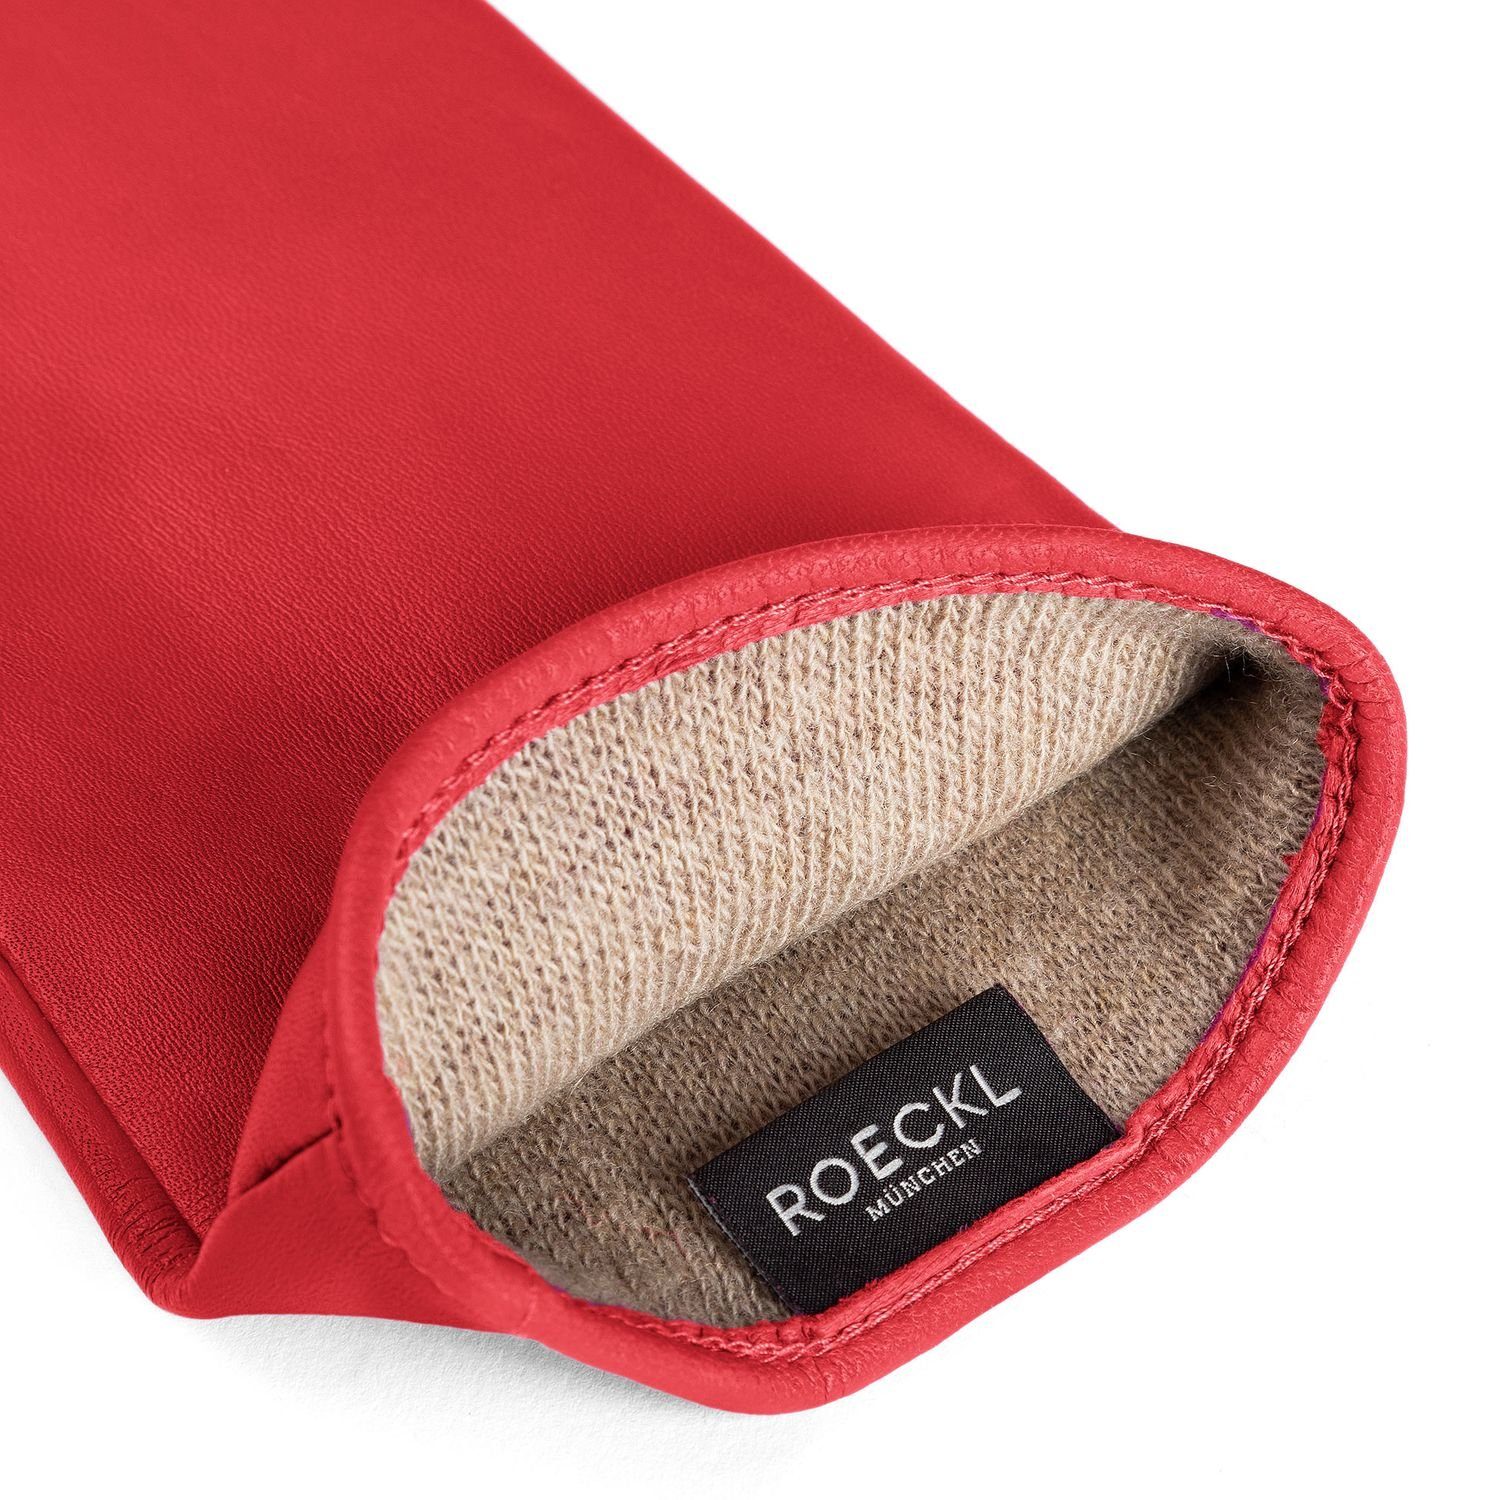 Roeckl Lederhandschuhe Leder-Handschuhe aus Kaschmir Futtermix red 445-classic Wolle und